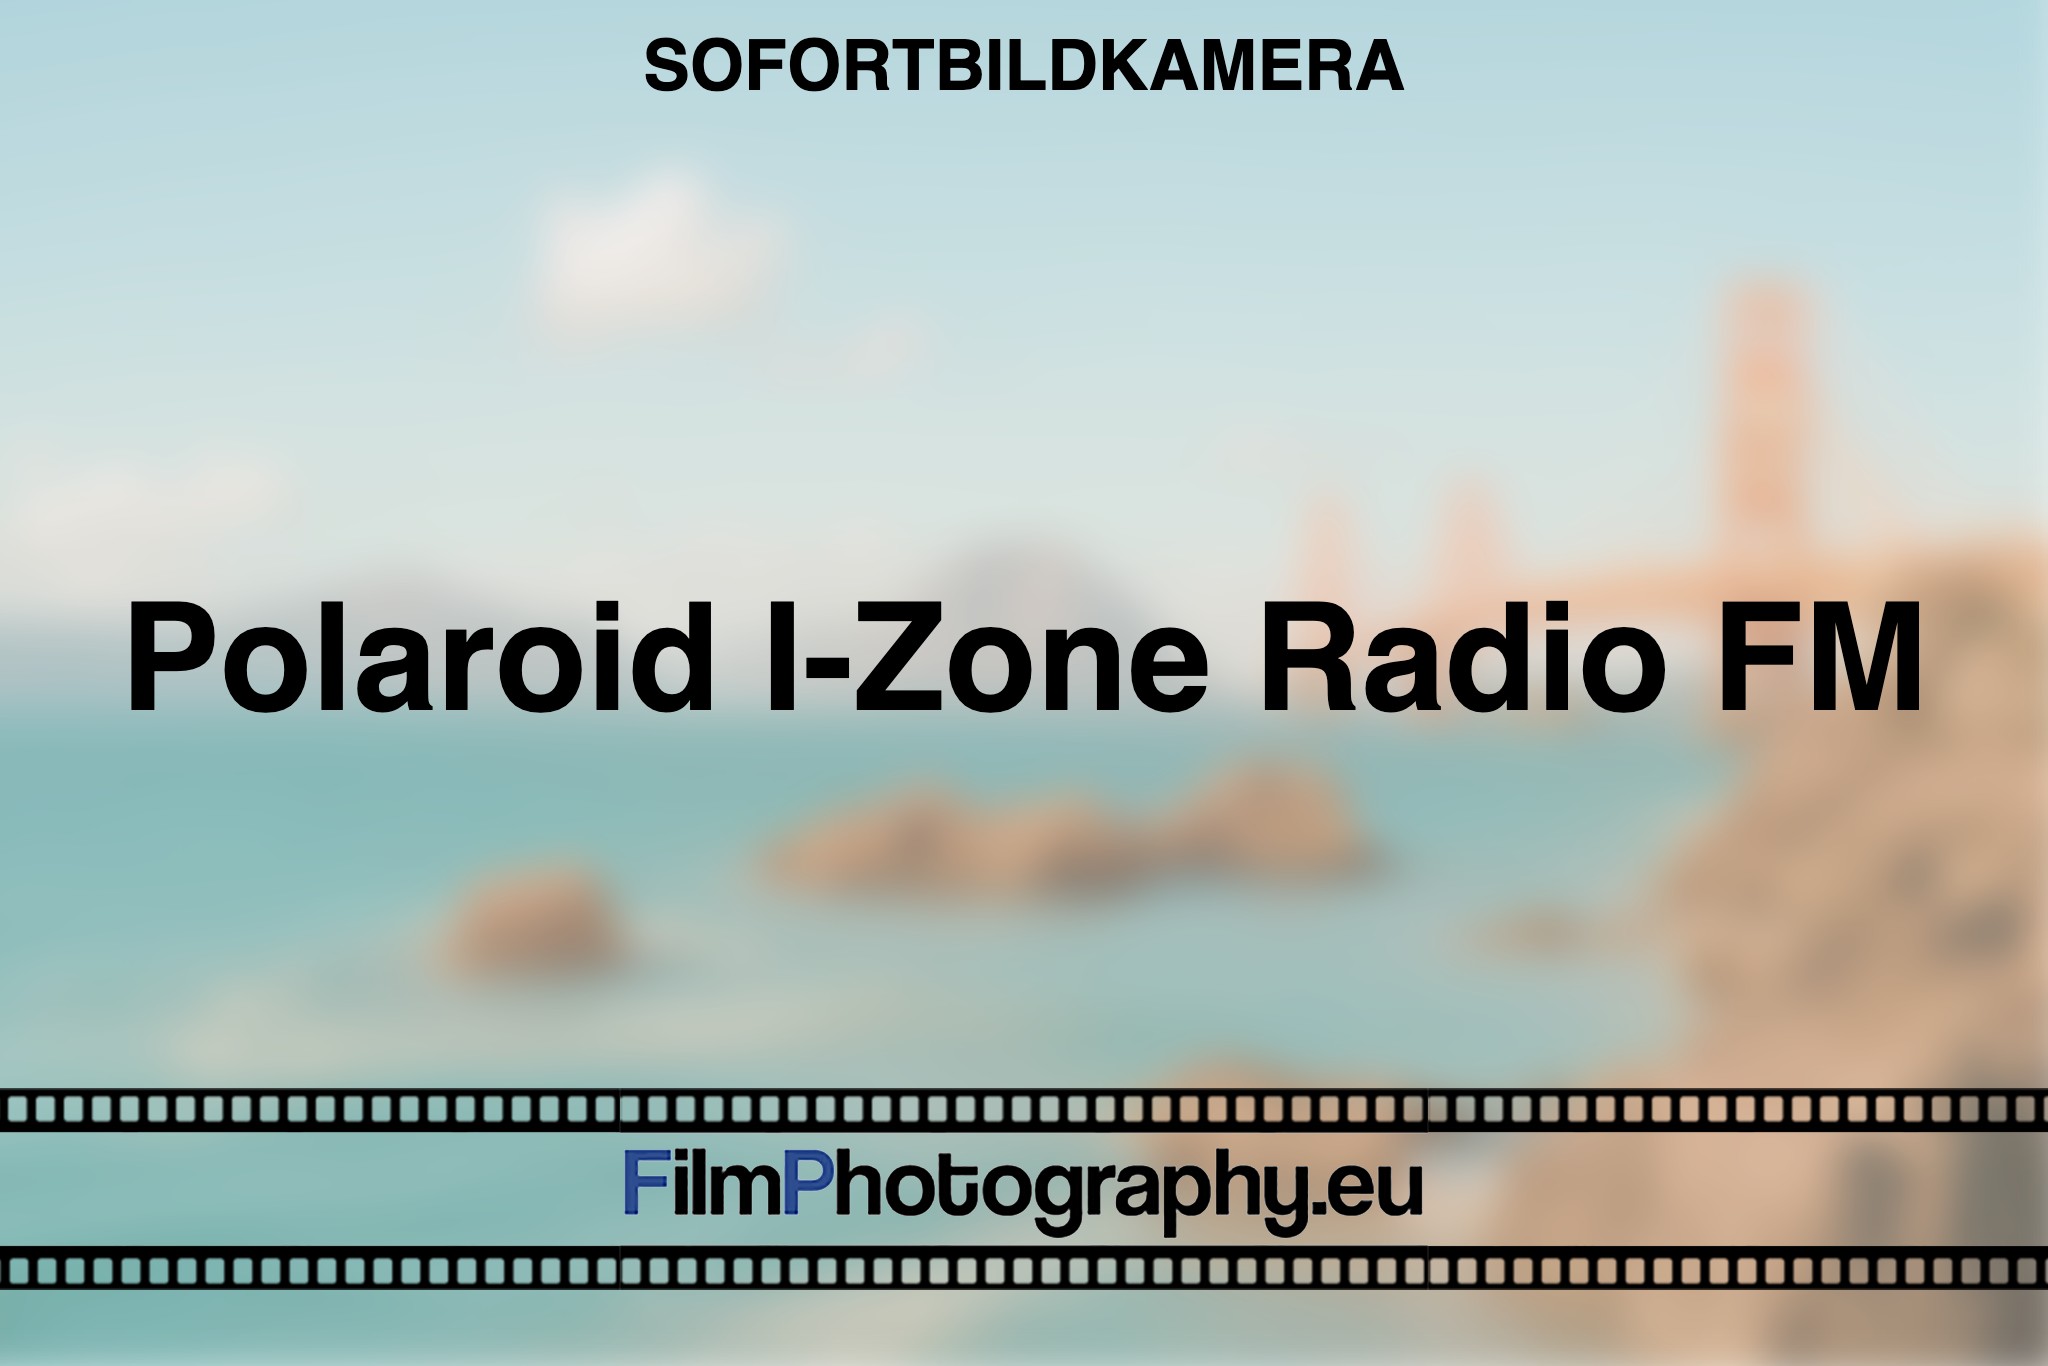 polaroid-i-zone-radio-fm-sofortbildkamera-bnv